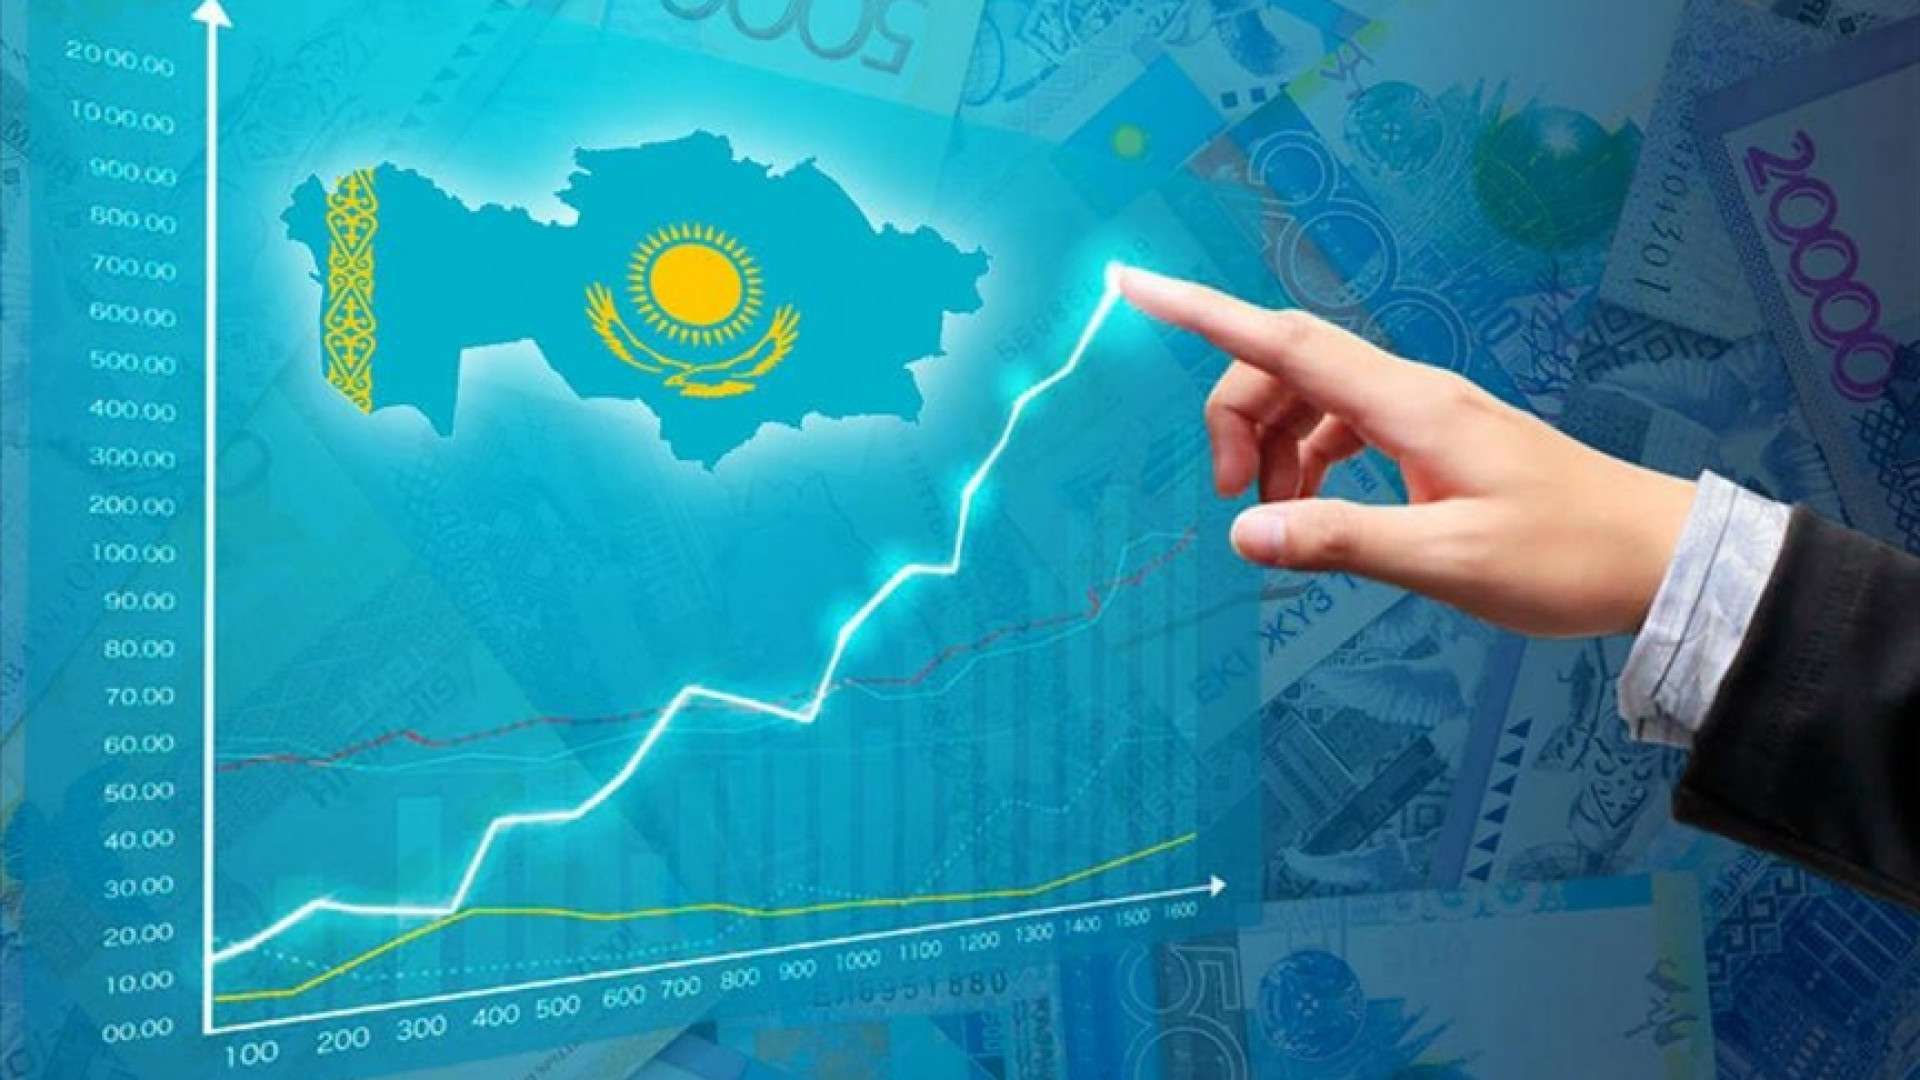 Изменения в экономике казахстана